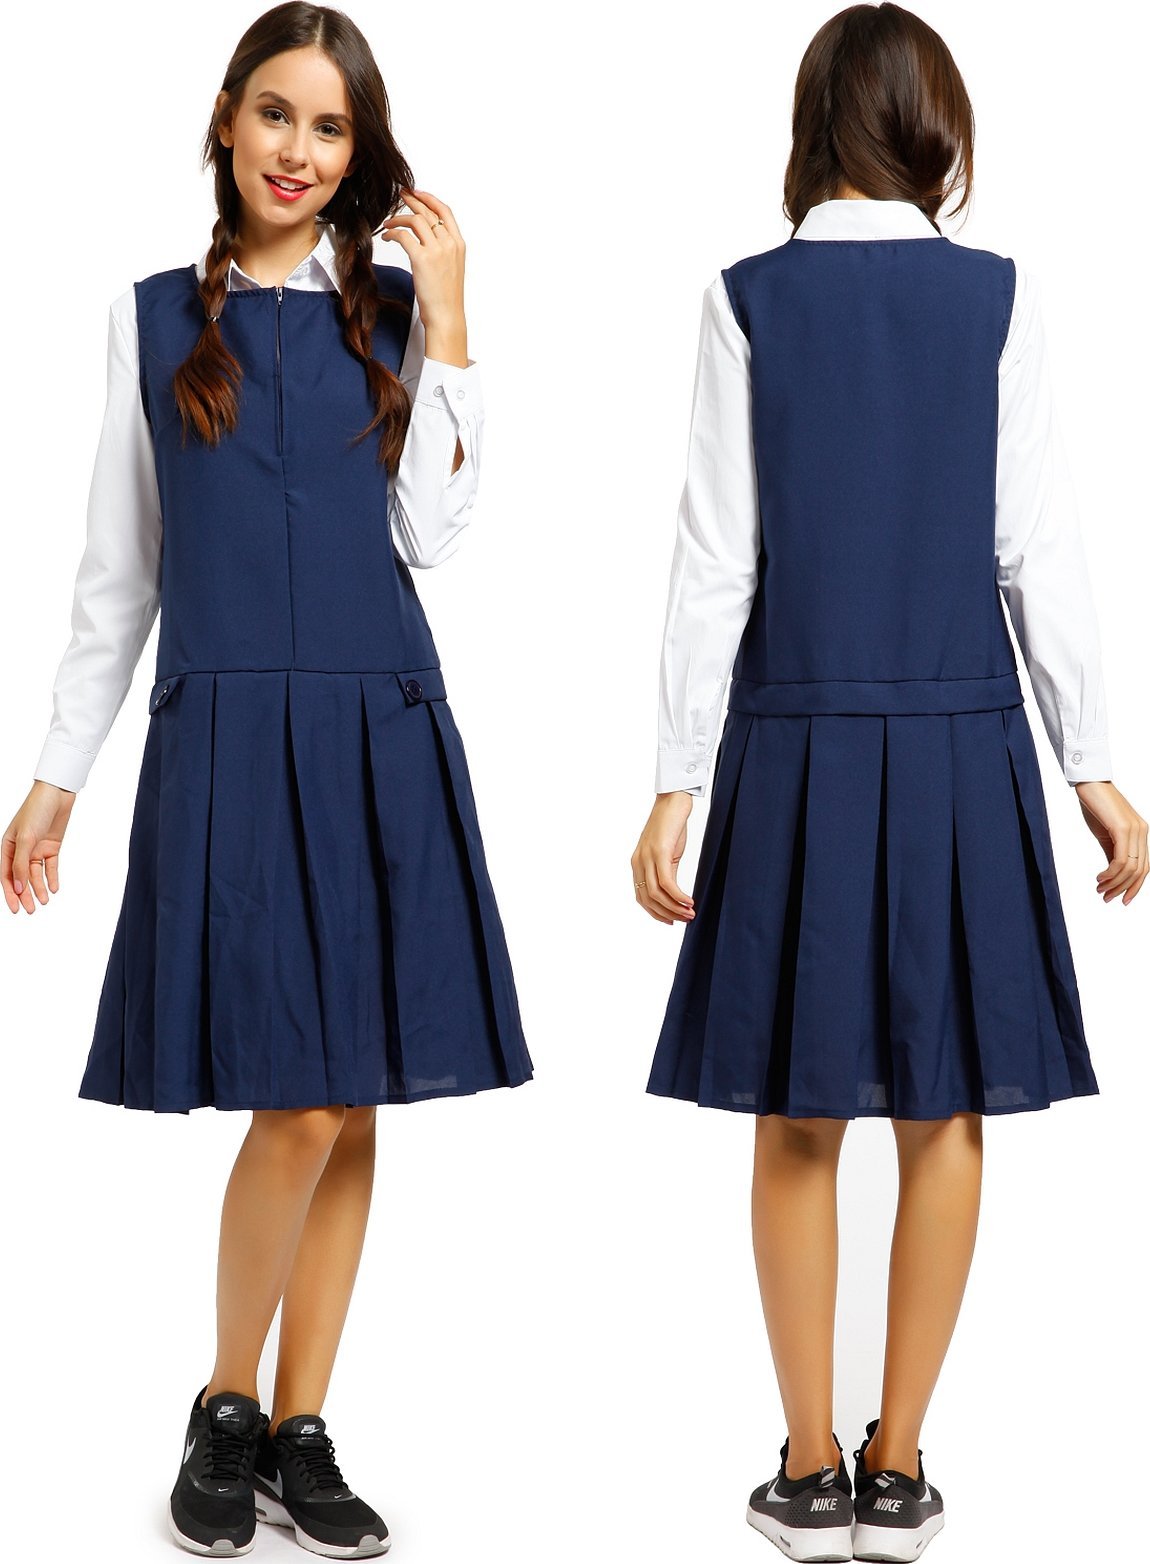 Pinafore dress school uniform